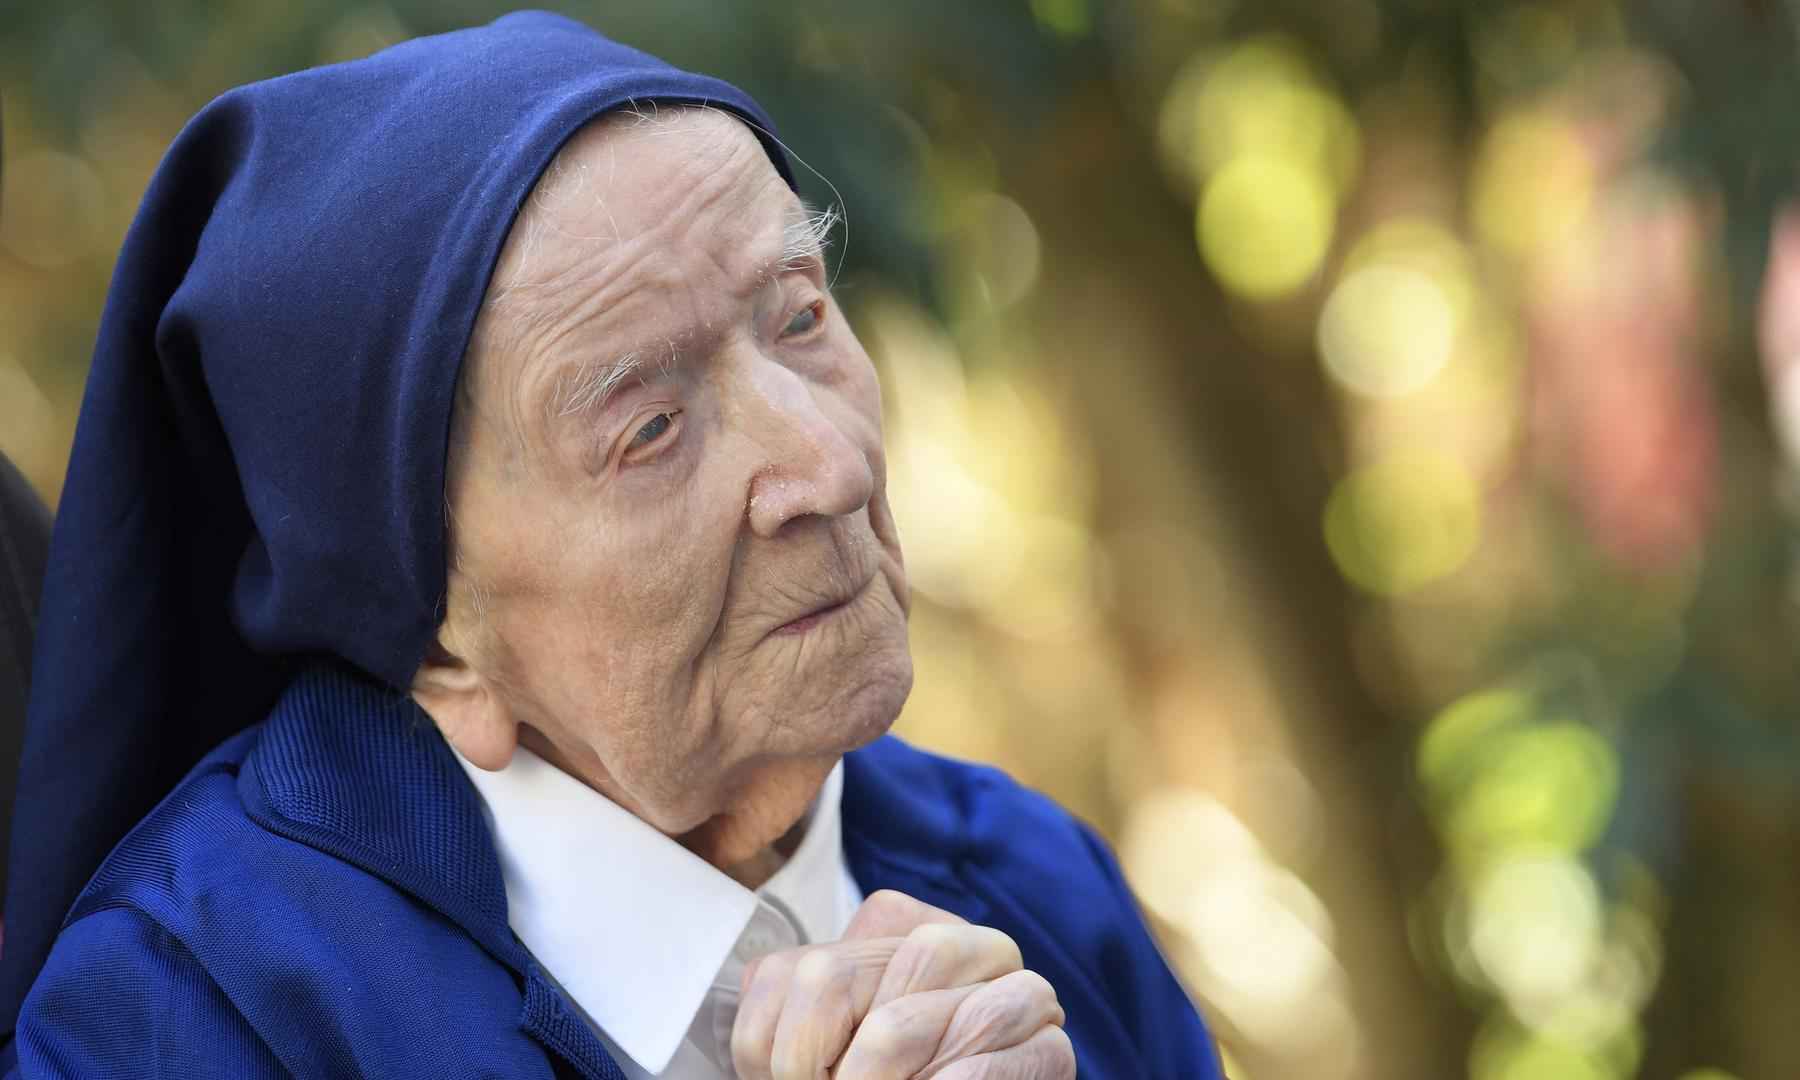 Pessoa mais velha do mundo morre aos 118 anos - NICOLAS TUCAT / AFP

